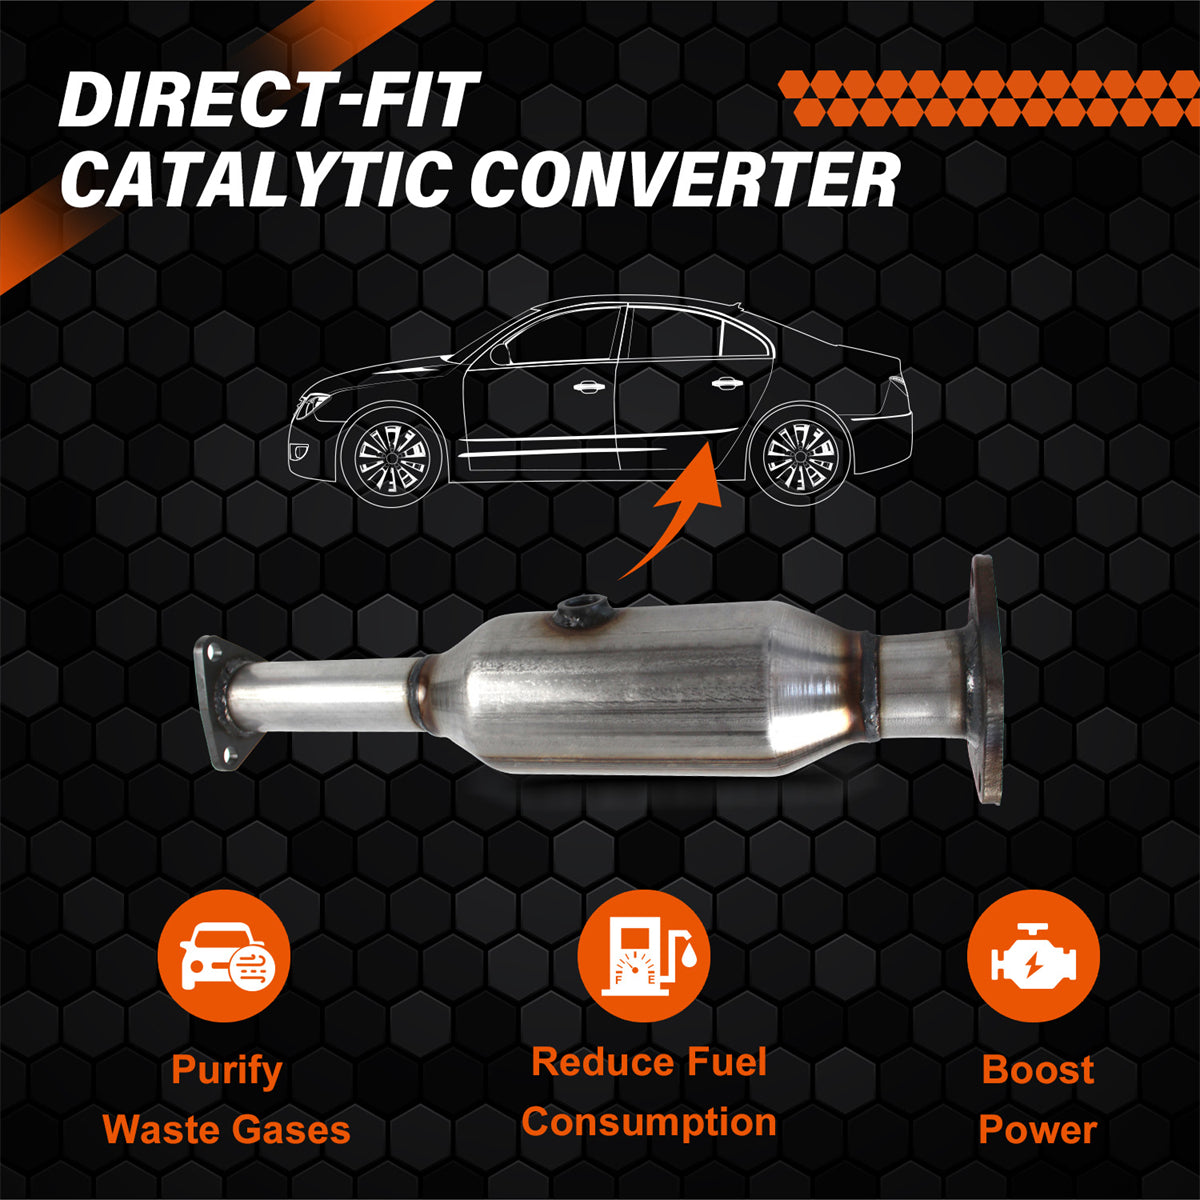 Catalytic Converter 16299, Catalytic Converter for 2003-2007 Honda Accord, Daysyore Catalytic Converter, Car Catalytic Converter